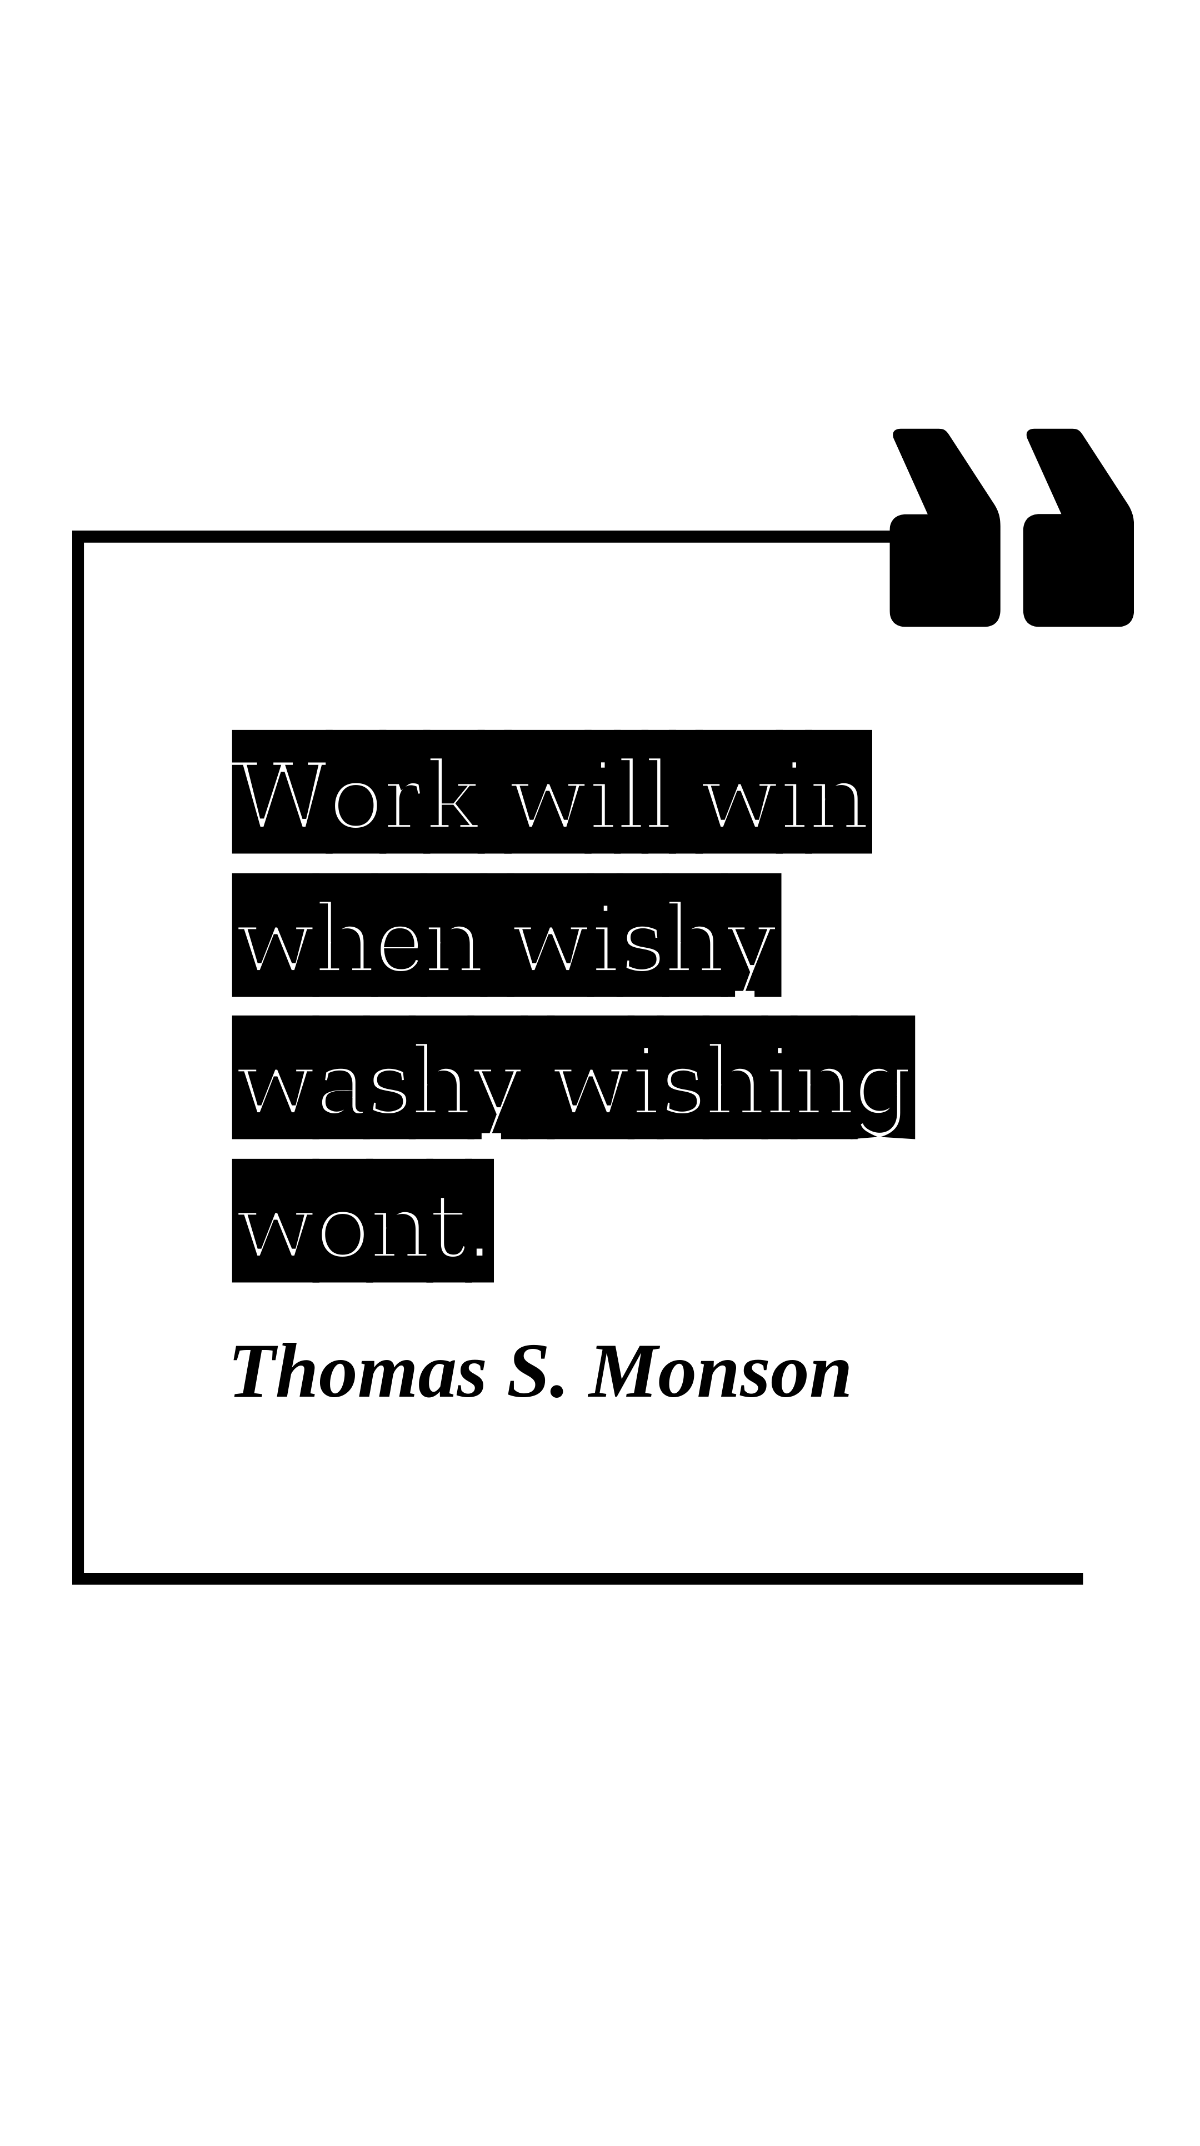 Thomas S. Monson - Work will win when wishy washy wishing wont.